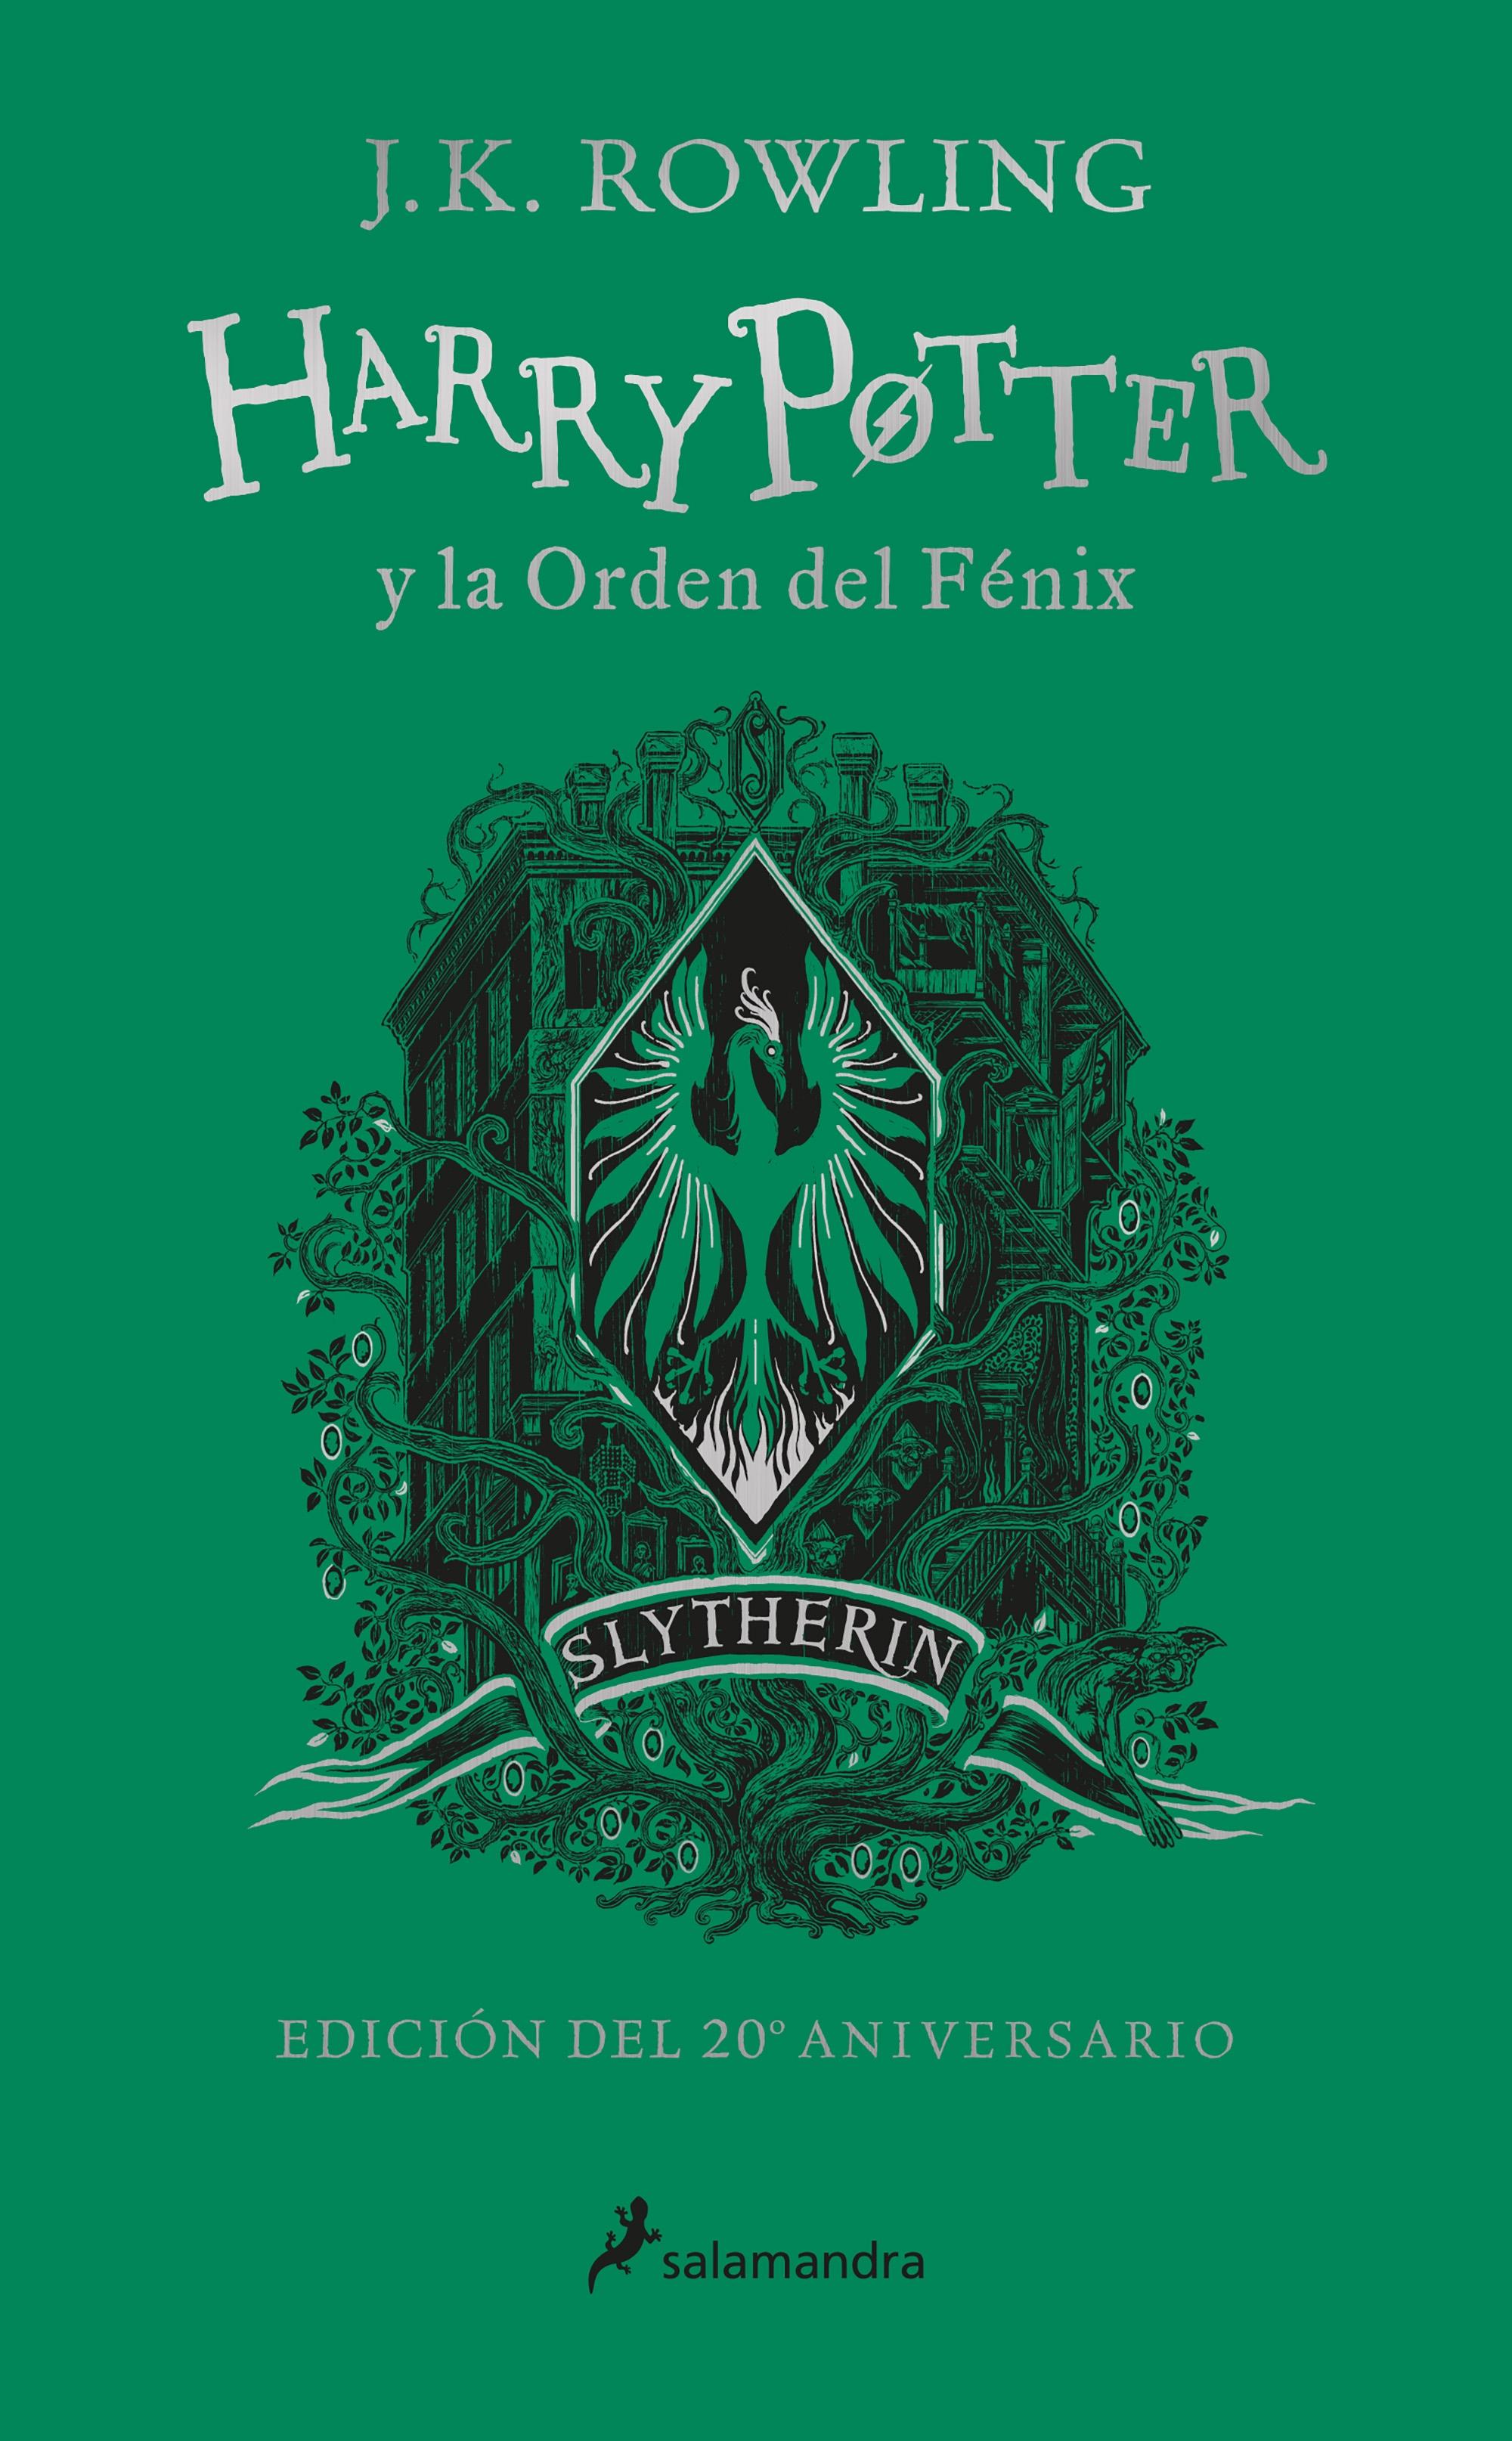 Harry Potter y la Orden del Fenix Edicion "Edicion Slytherin del 20º Aniversario"